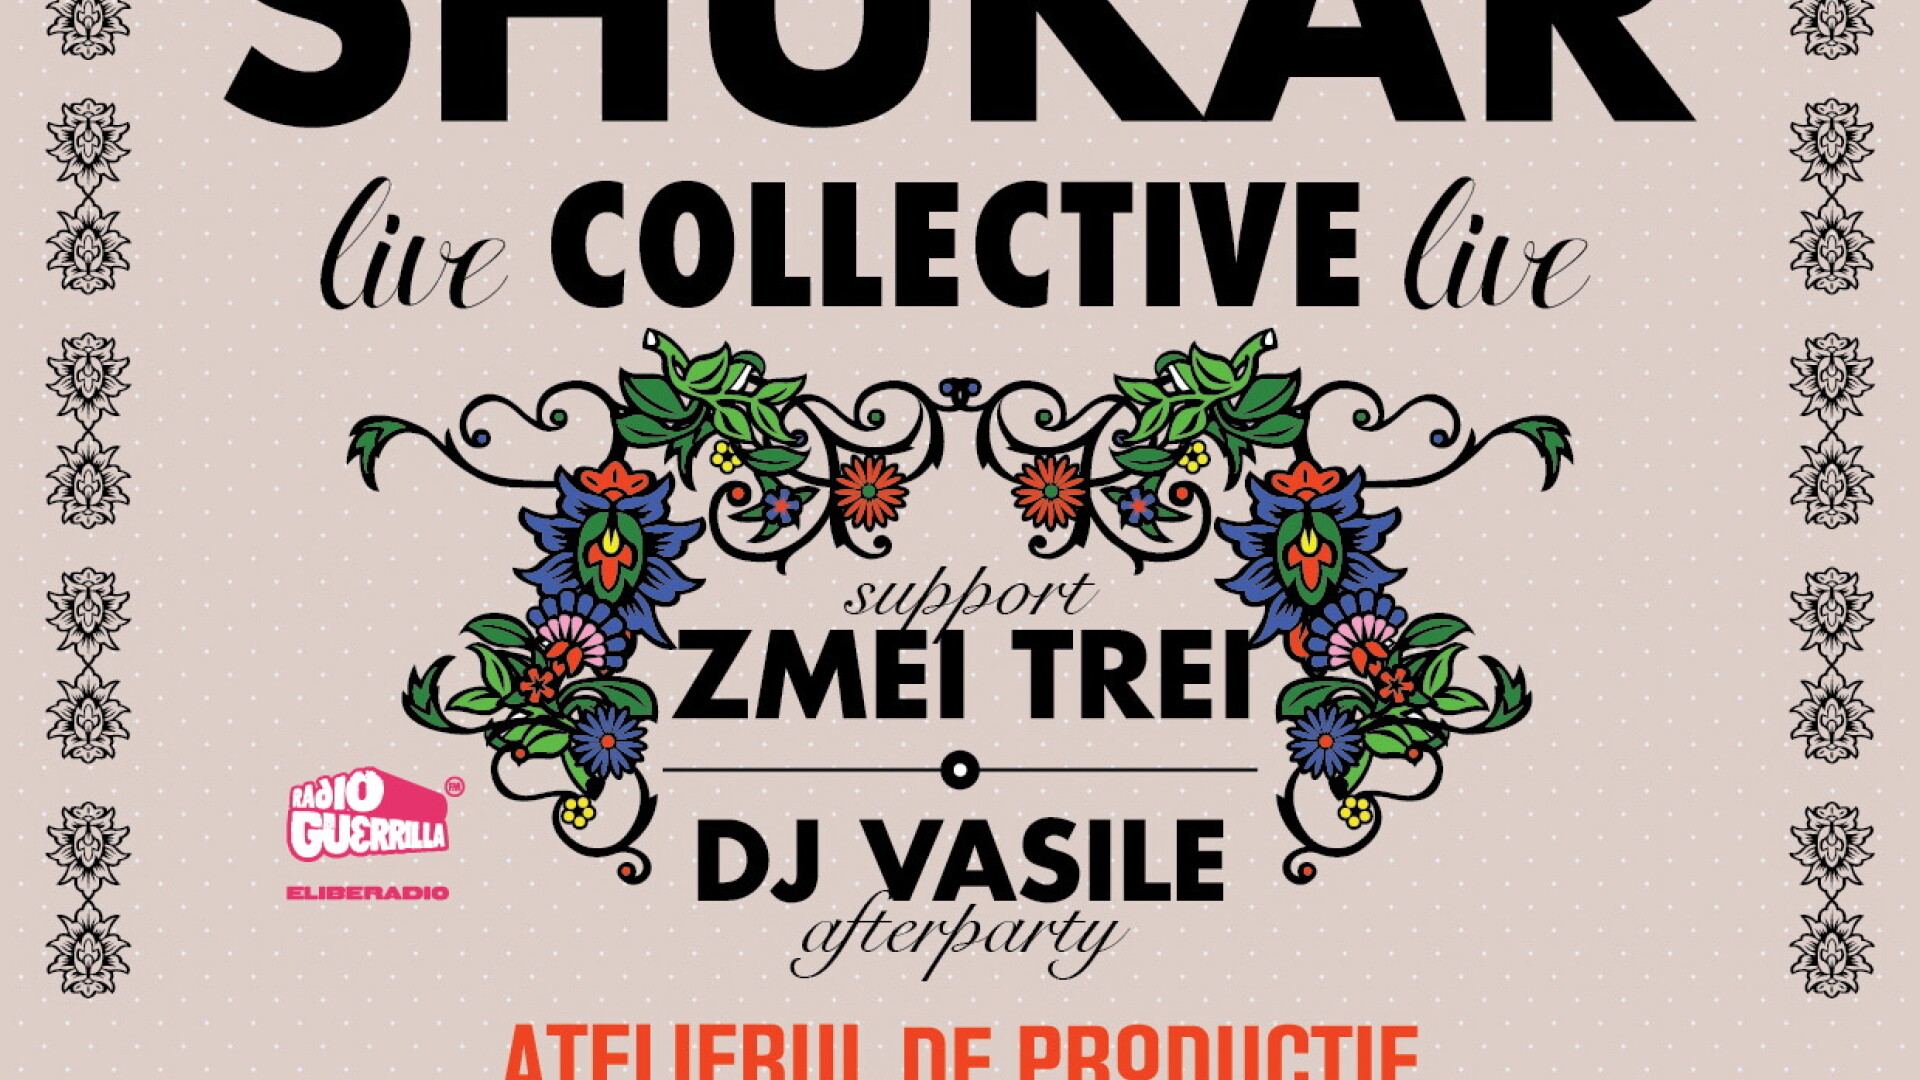 Shukar Collective